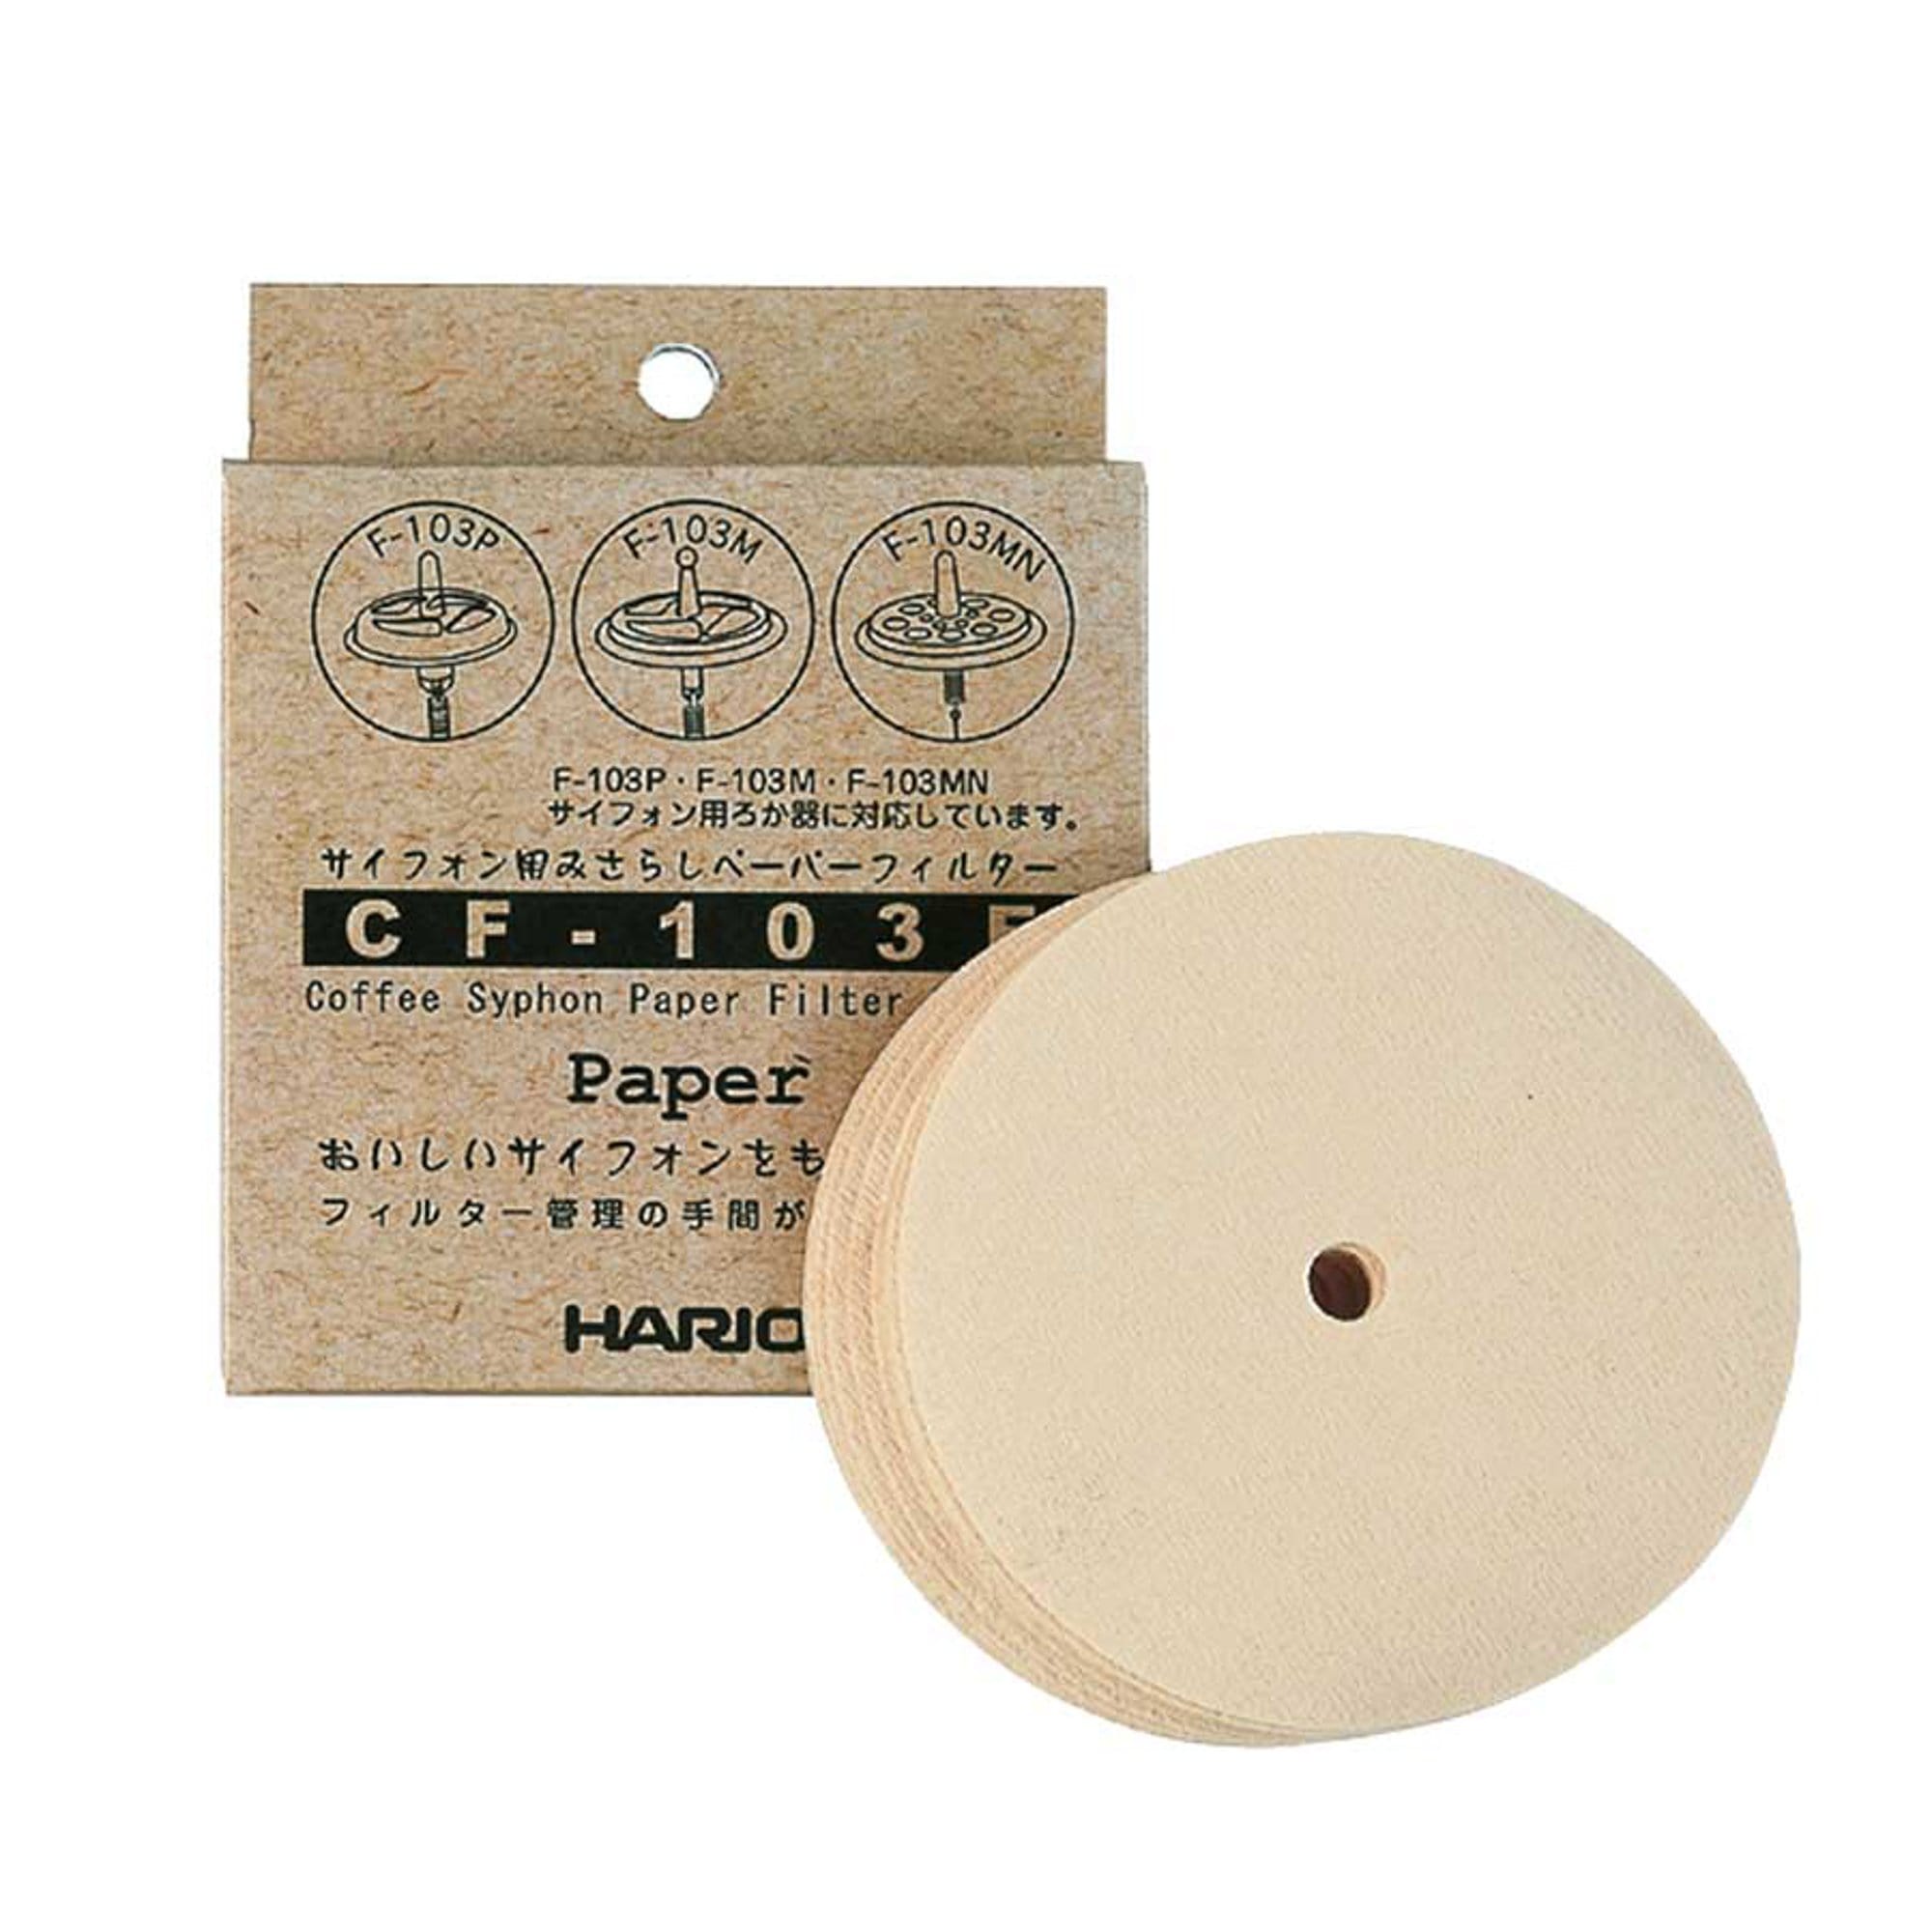 Hario Kavos ruošimo prietaisas Sifono popieriniai filtrai Hario CF-103E, 100 vnt.